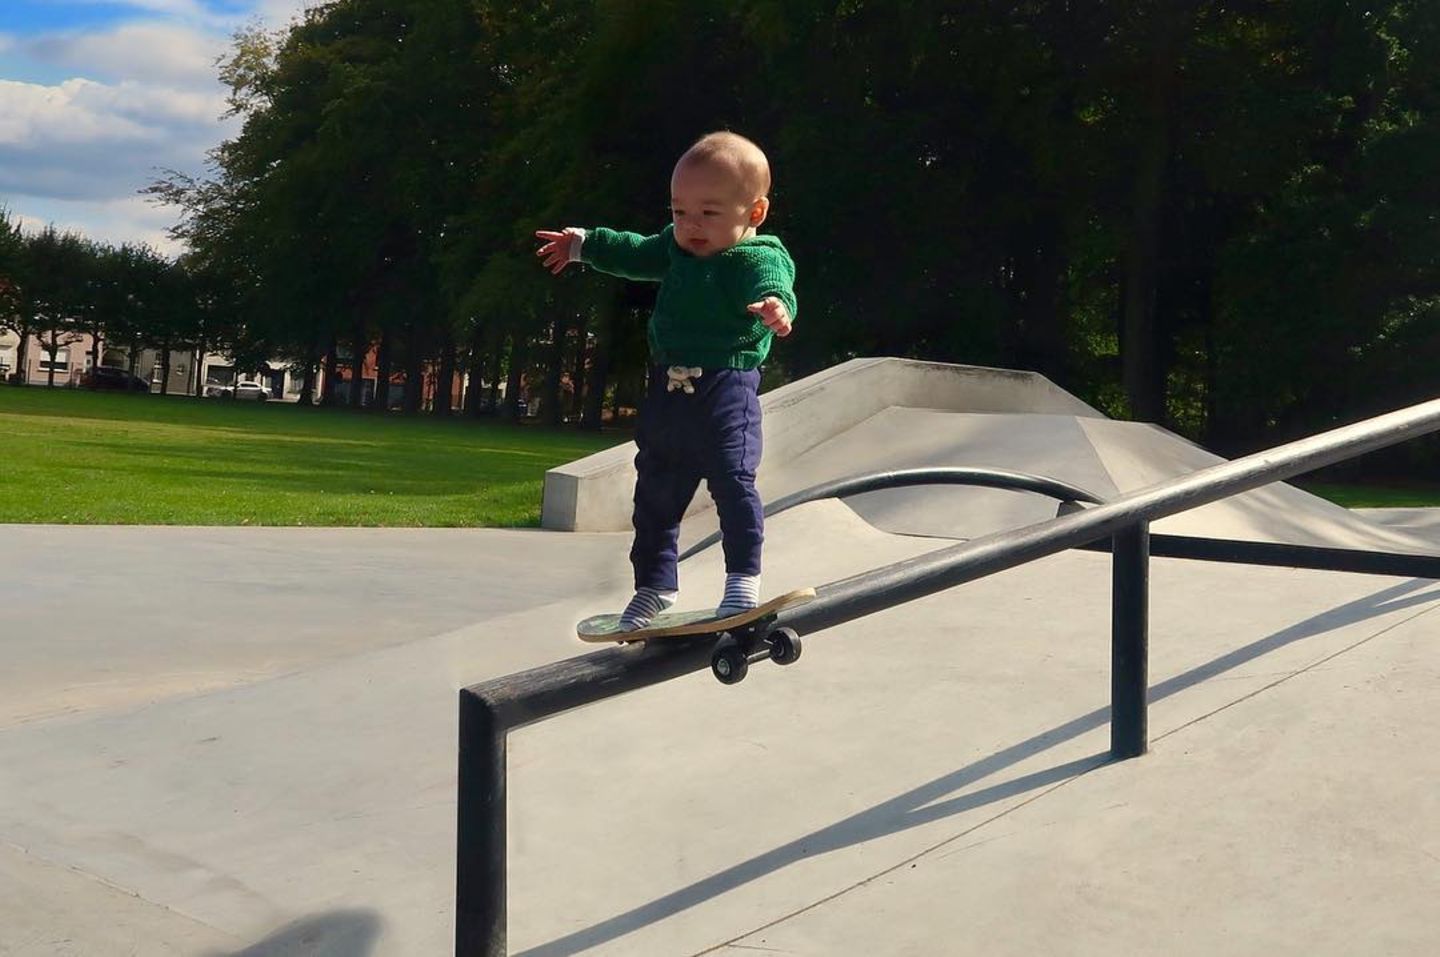 Abenteuerliche Babyfotos: Baby auf Skateboard